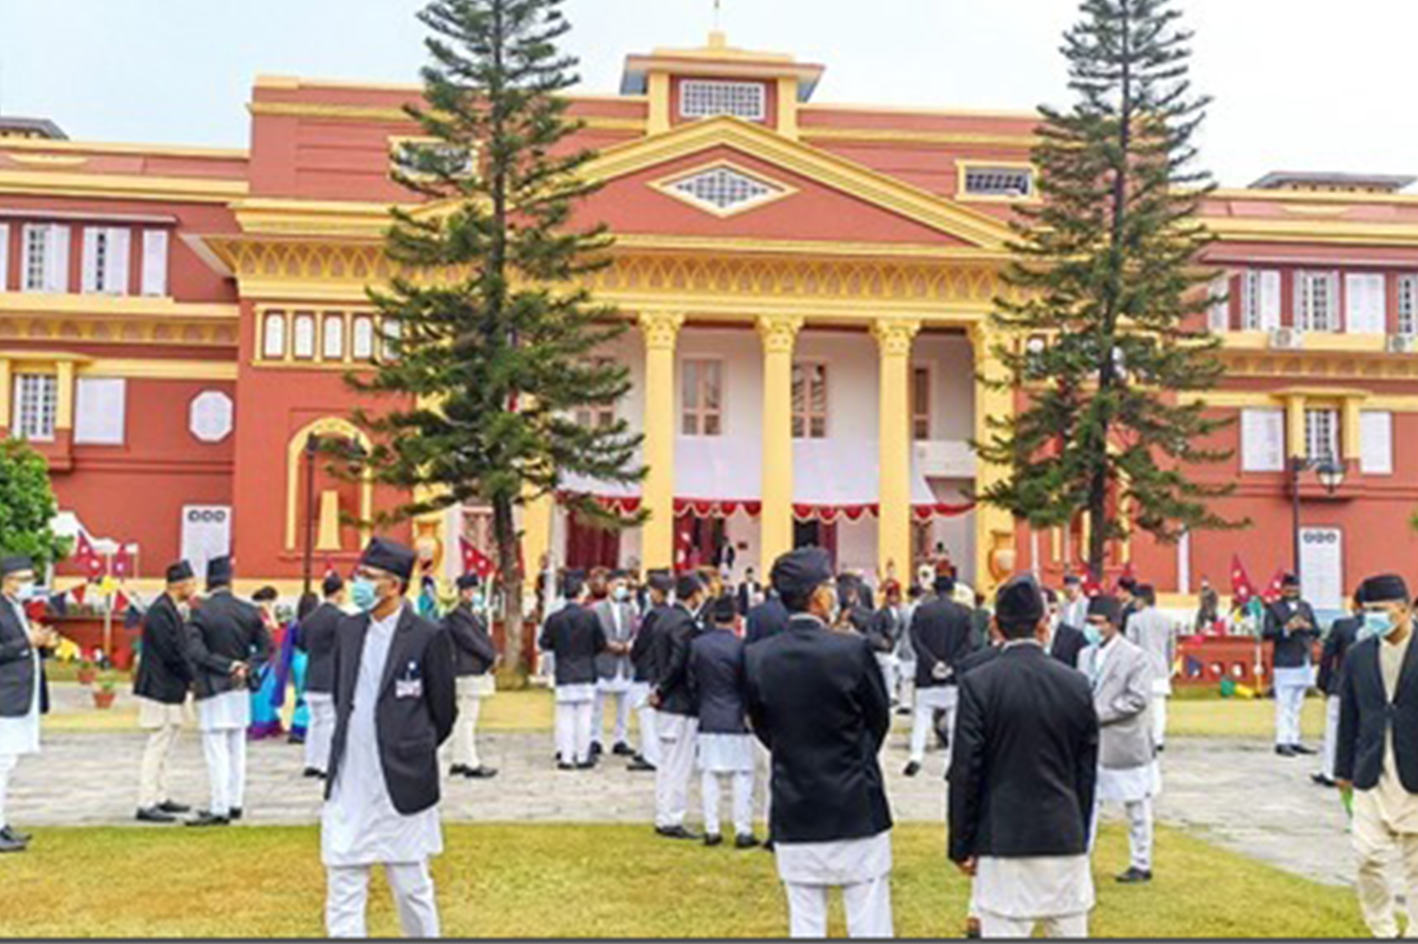 ネパール在住 垣見一雅様 ネパール大統領から表彰を受けました